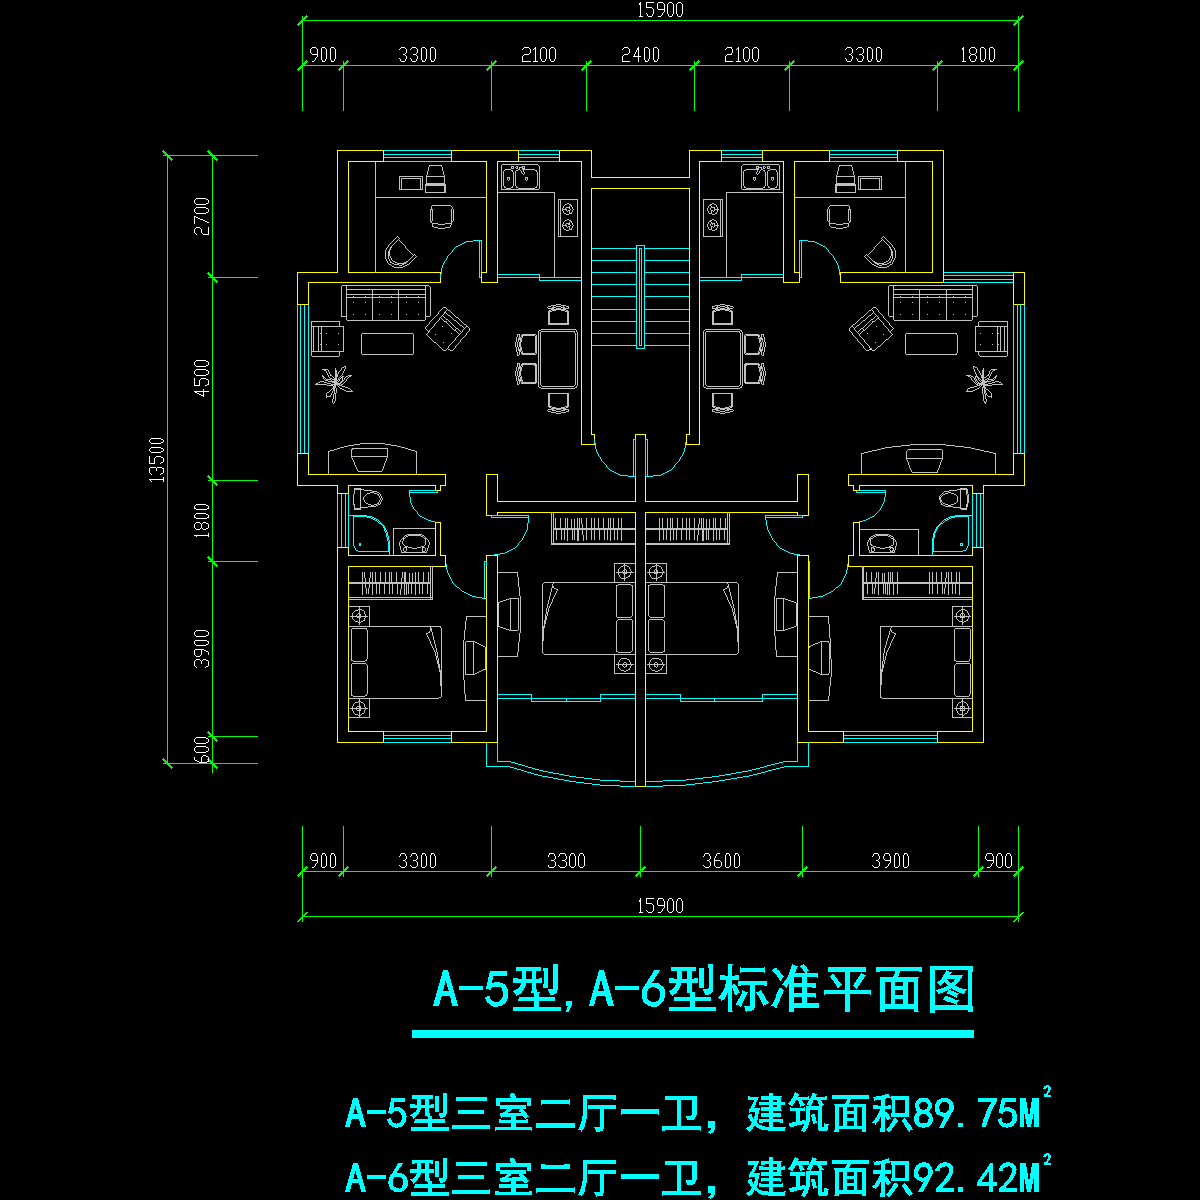 板式多层一梯二户三室二厅一卫户型CAD图纸(90/92)